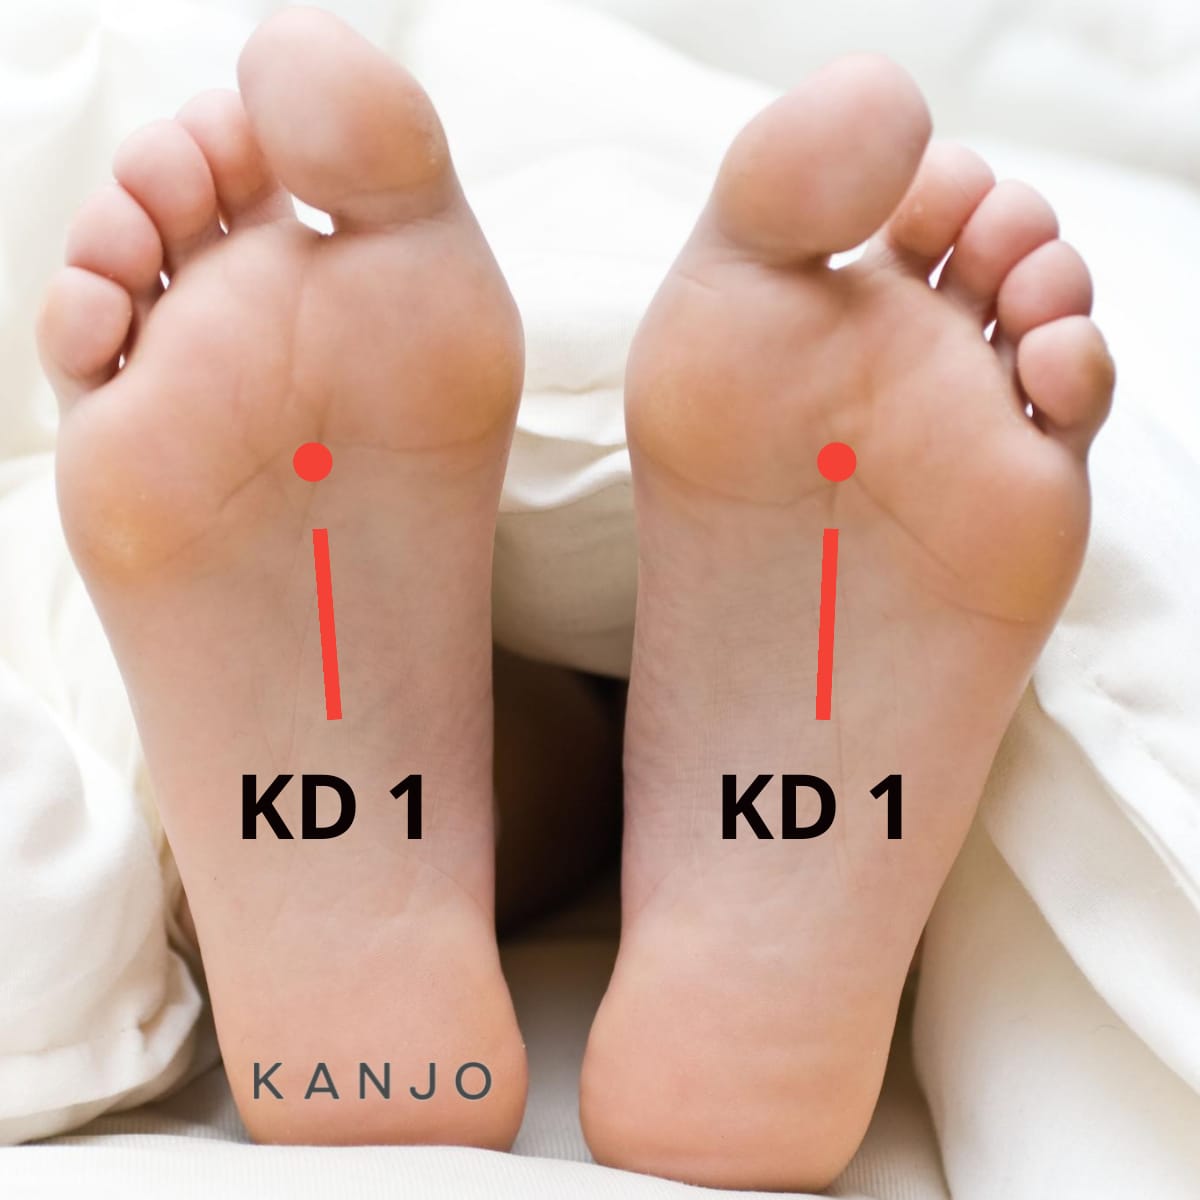 Kidney 1 (KD 1) Pressure Point